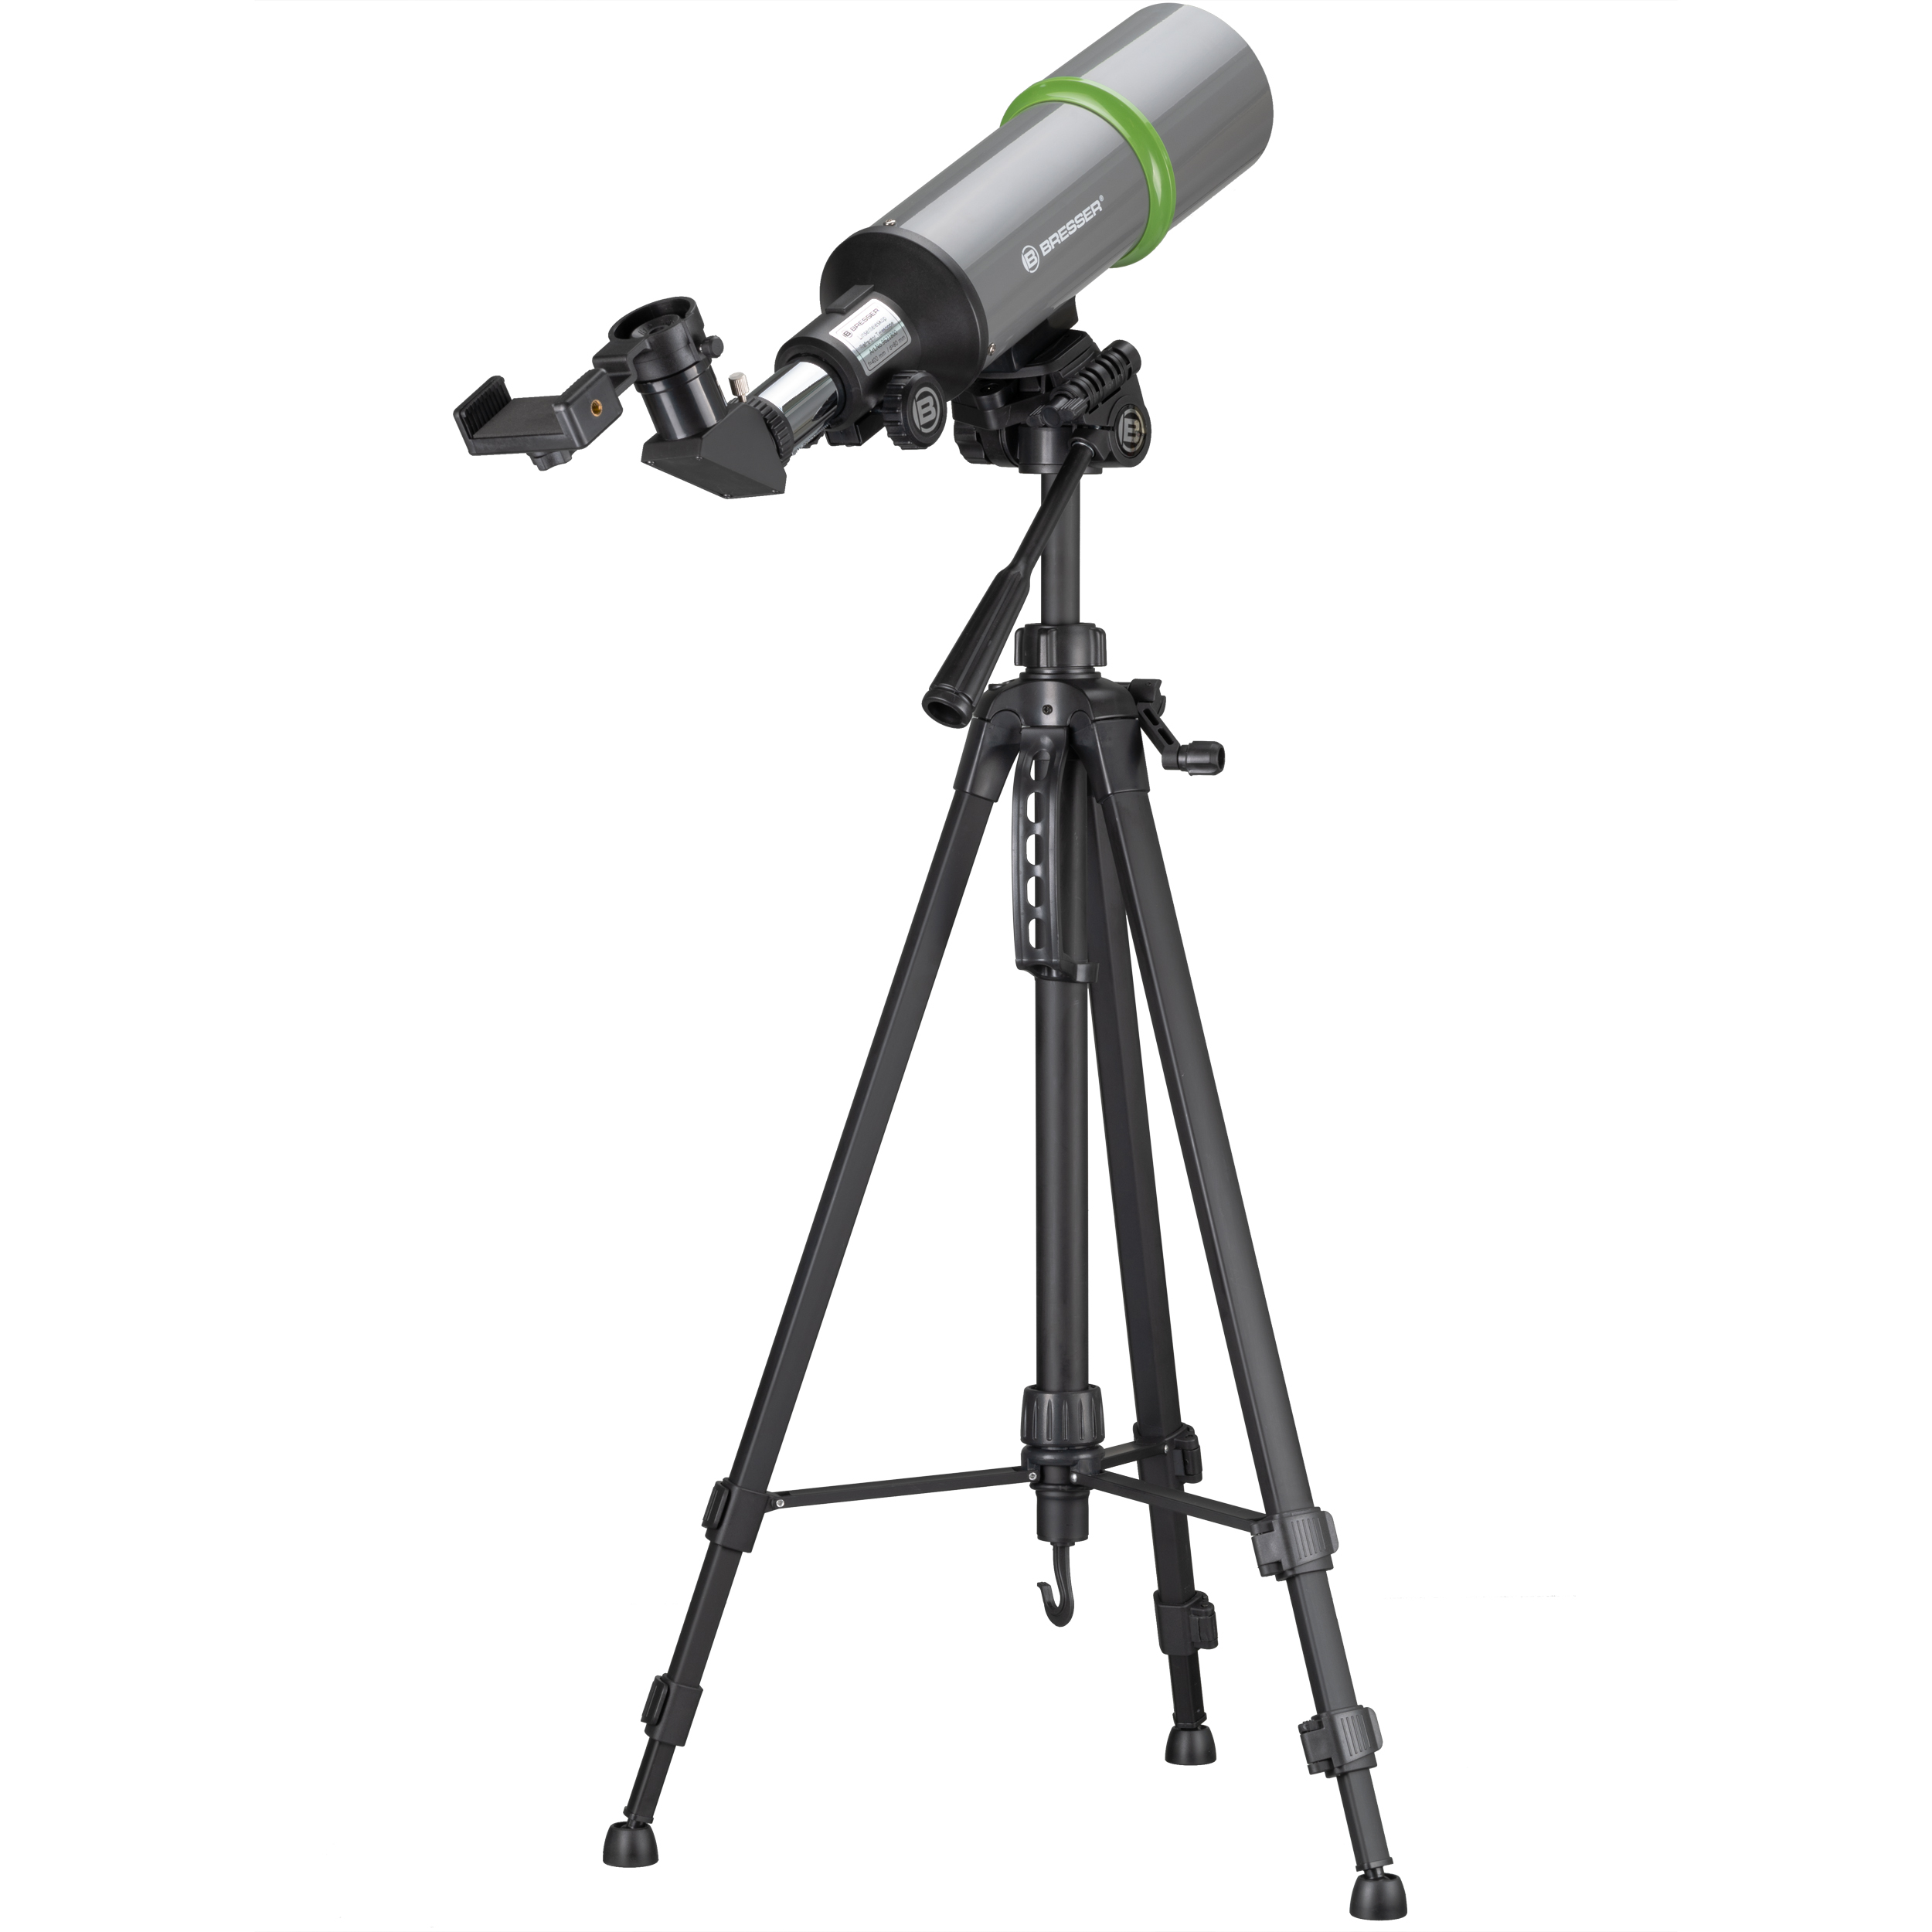  Telescopio da viaggio NightExplorer BRESSER 80/400 con zaino, adattatore per smartphone e accessori 